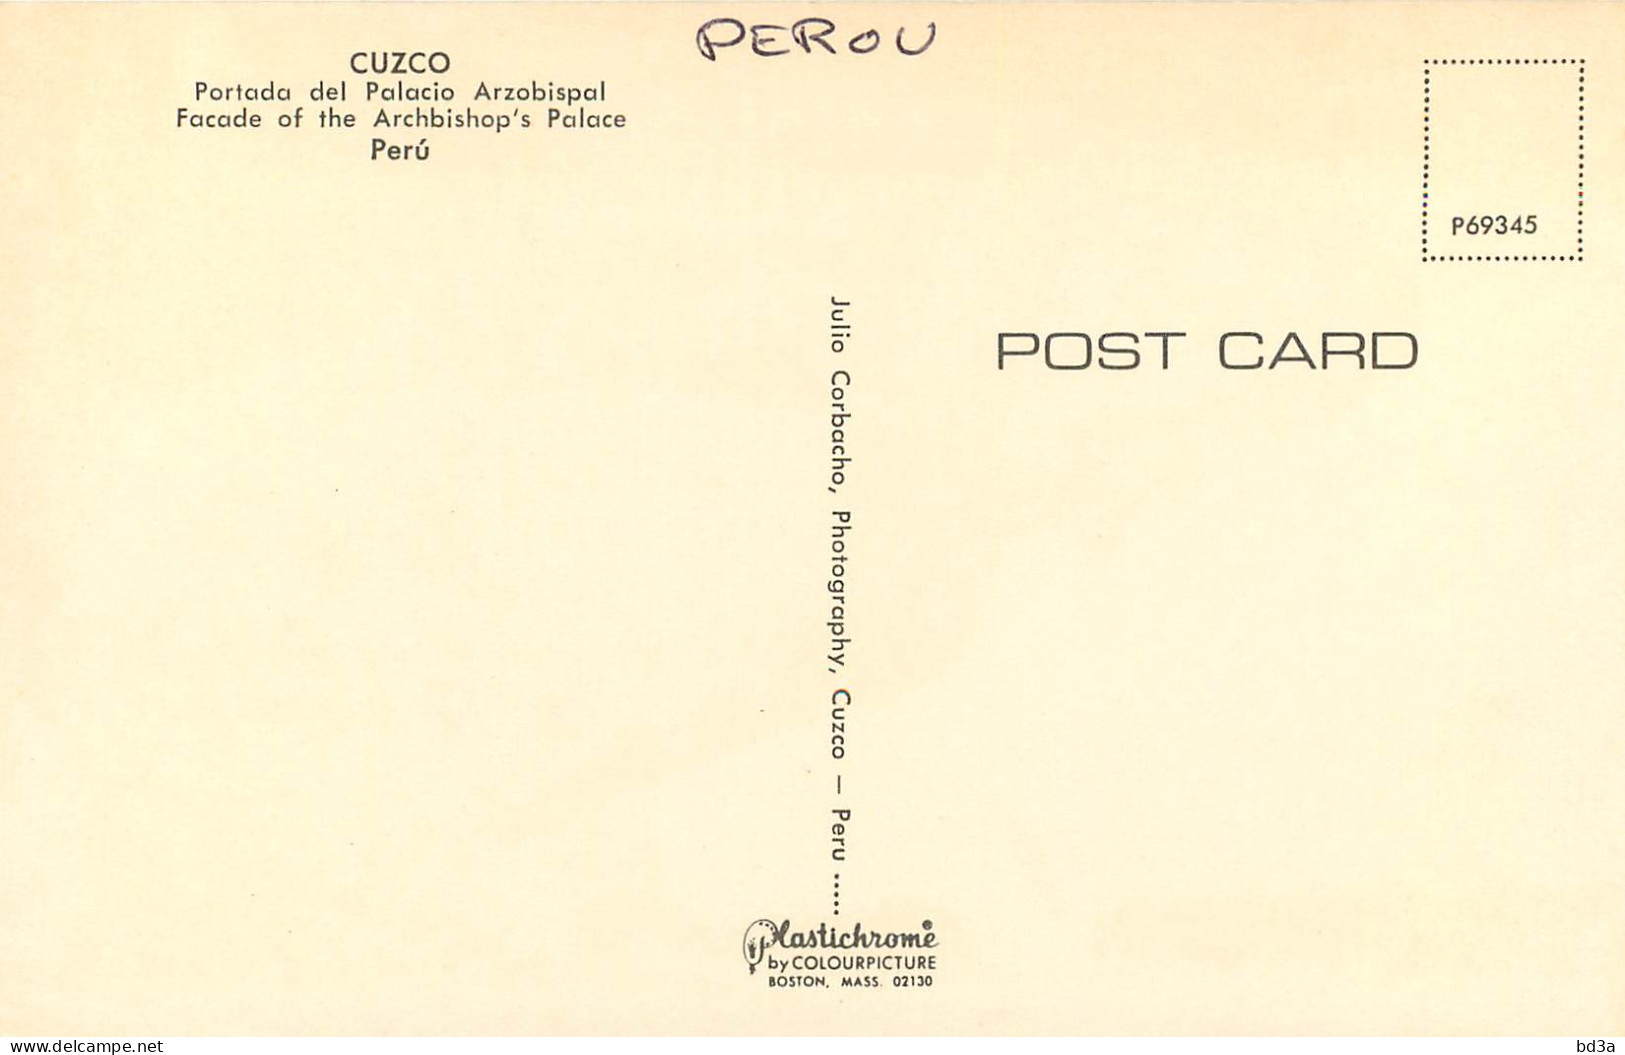 PEROU PERU CUZCO - Perù